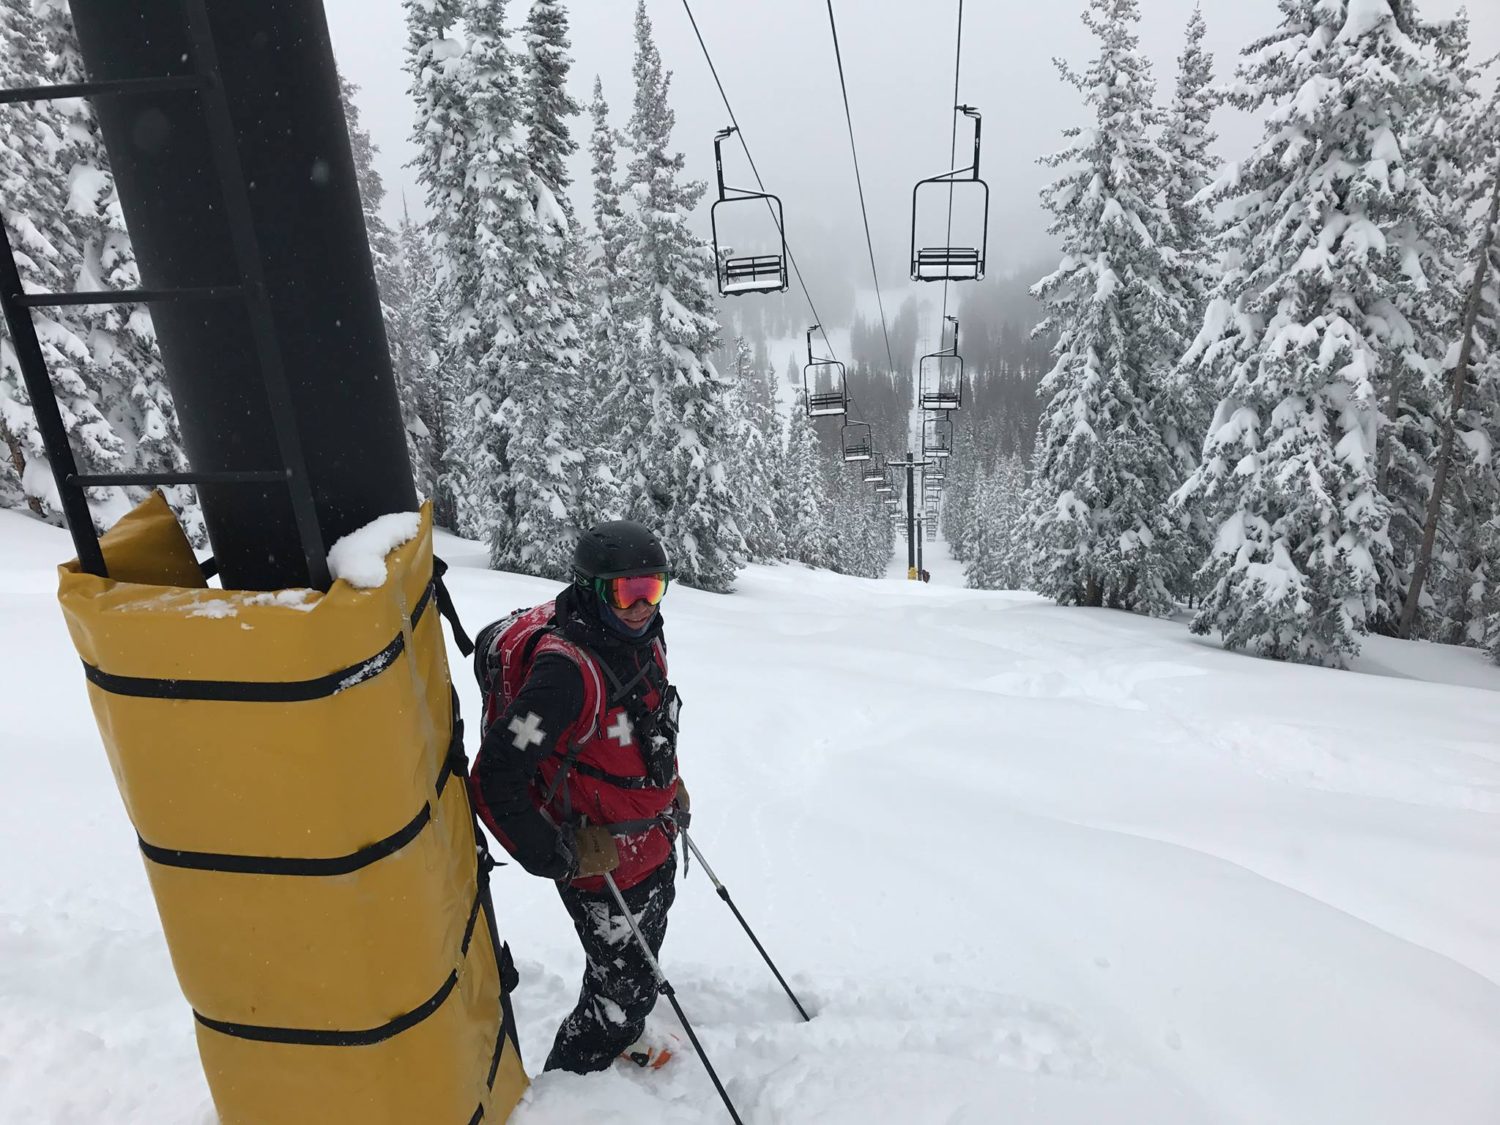 Ski Patrol to the rescue